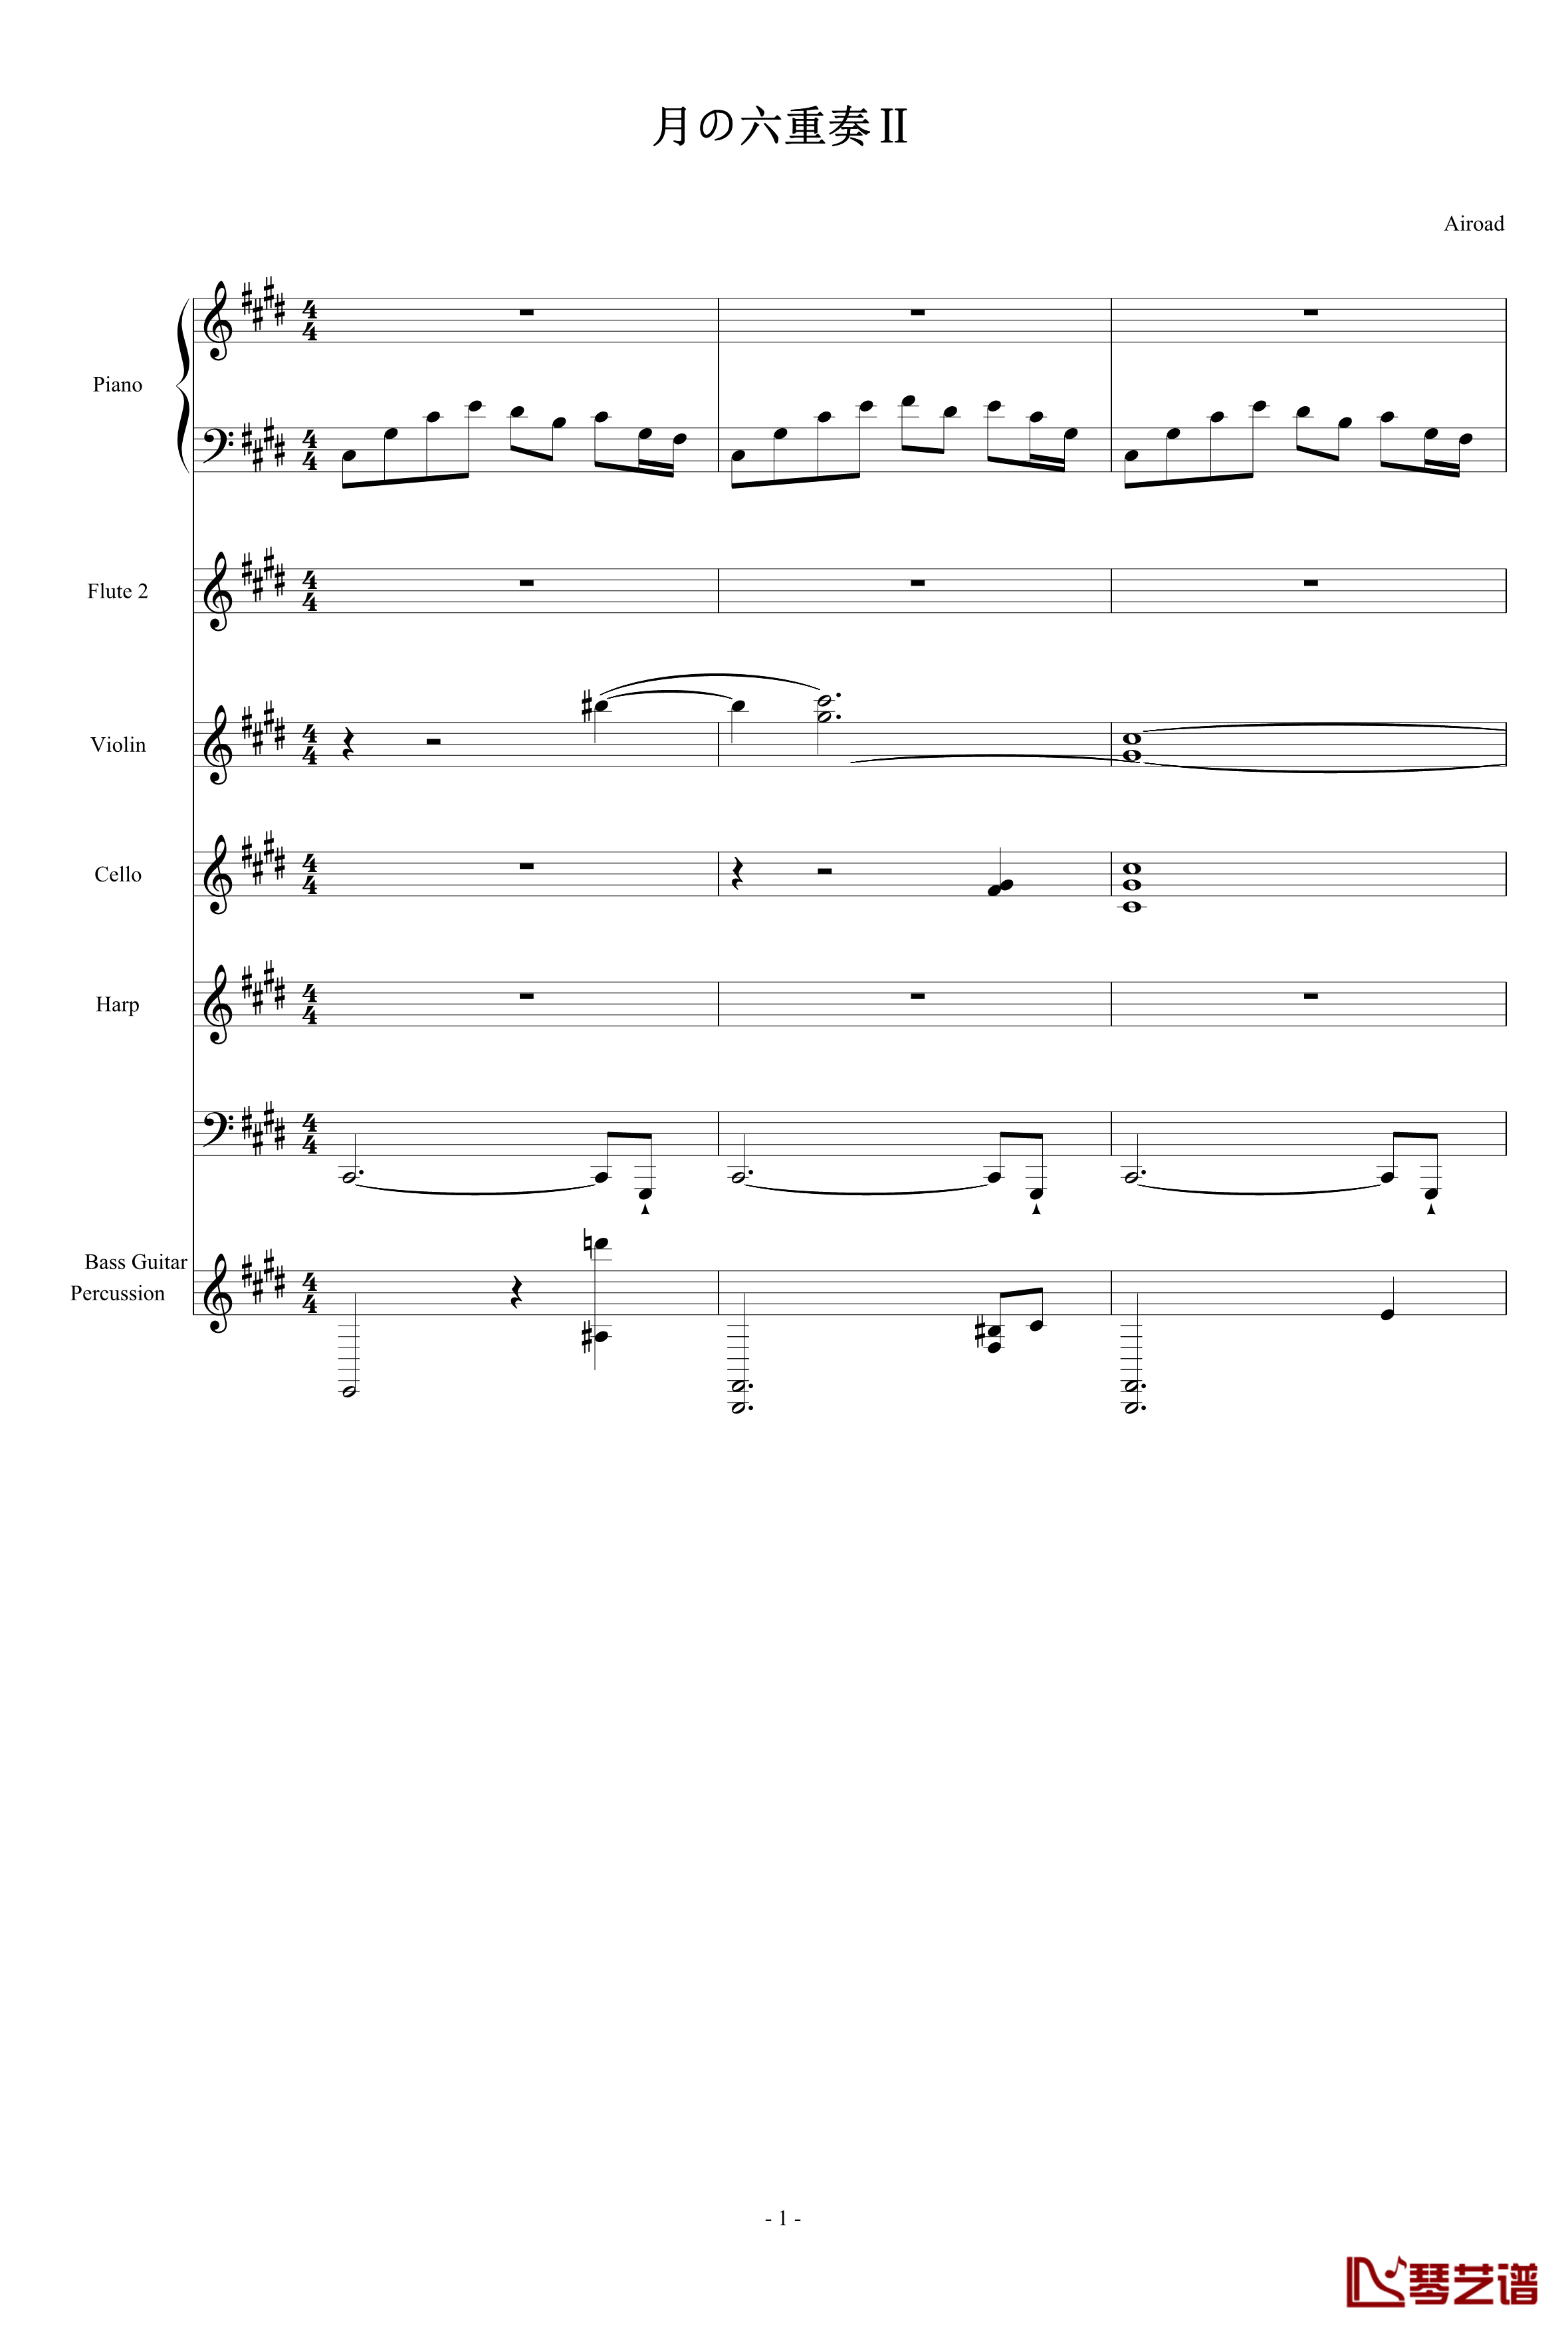 月の六重奏II钢琴谱-airoad1